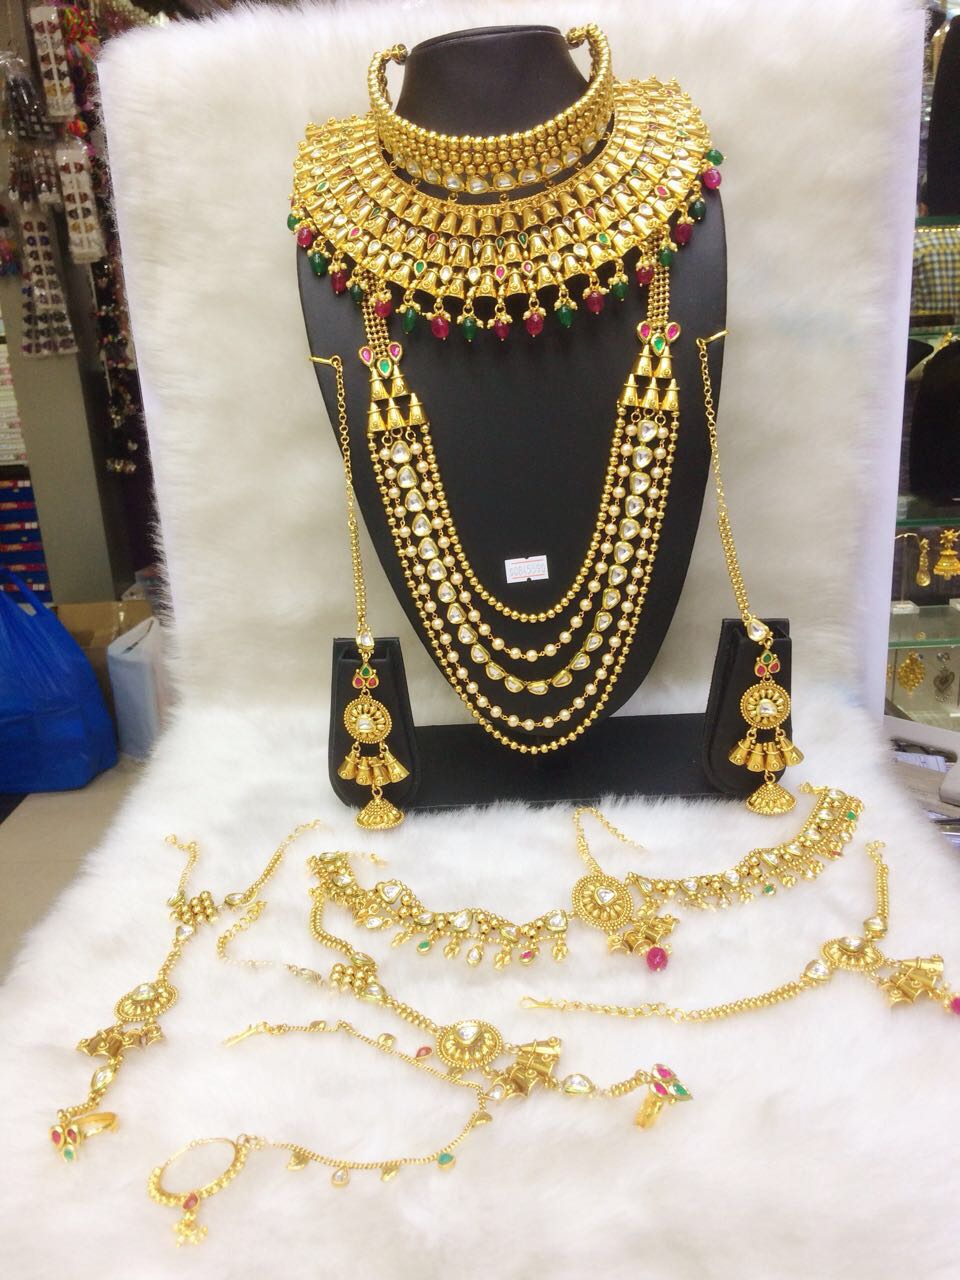 indiankundanjewelry Rose Gold CZ Diamonds Ruby Necklace Earrings Set, Bridal Dangler Earrings, Bridal Choker, Party Wear Necklace Earrings, Statement Piece Set